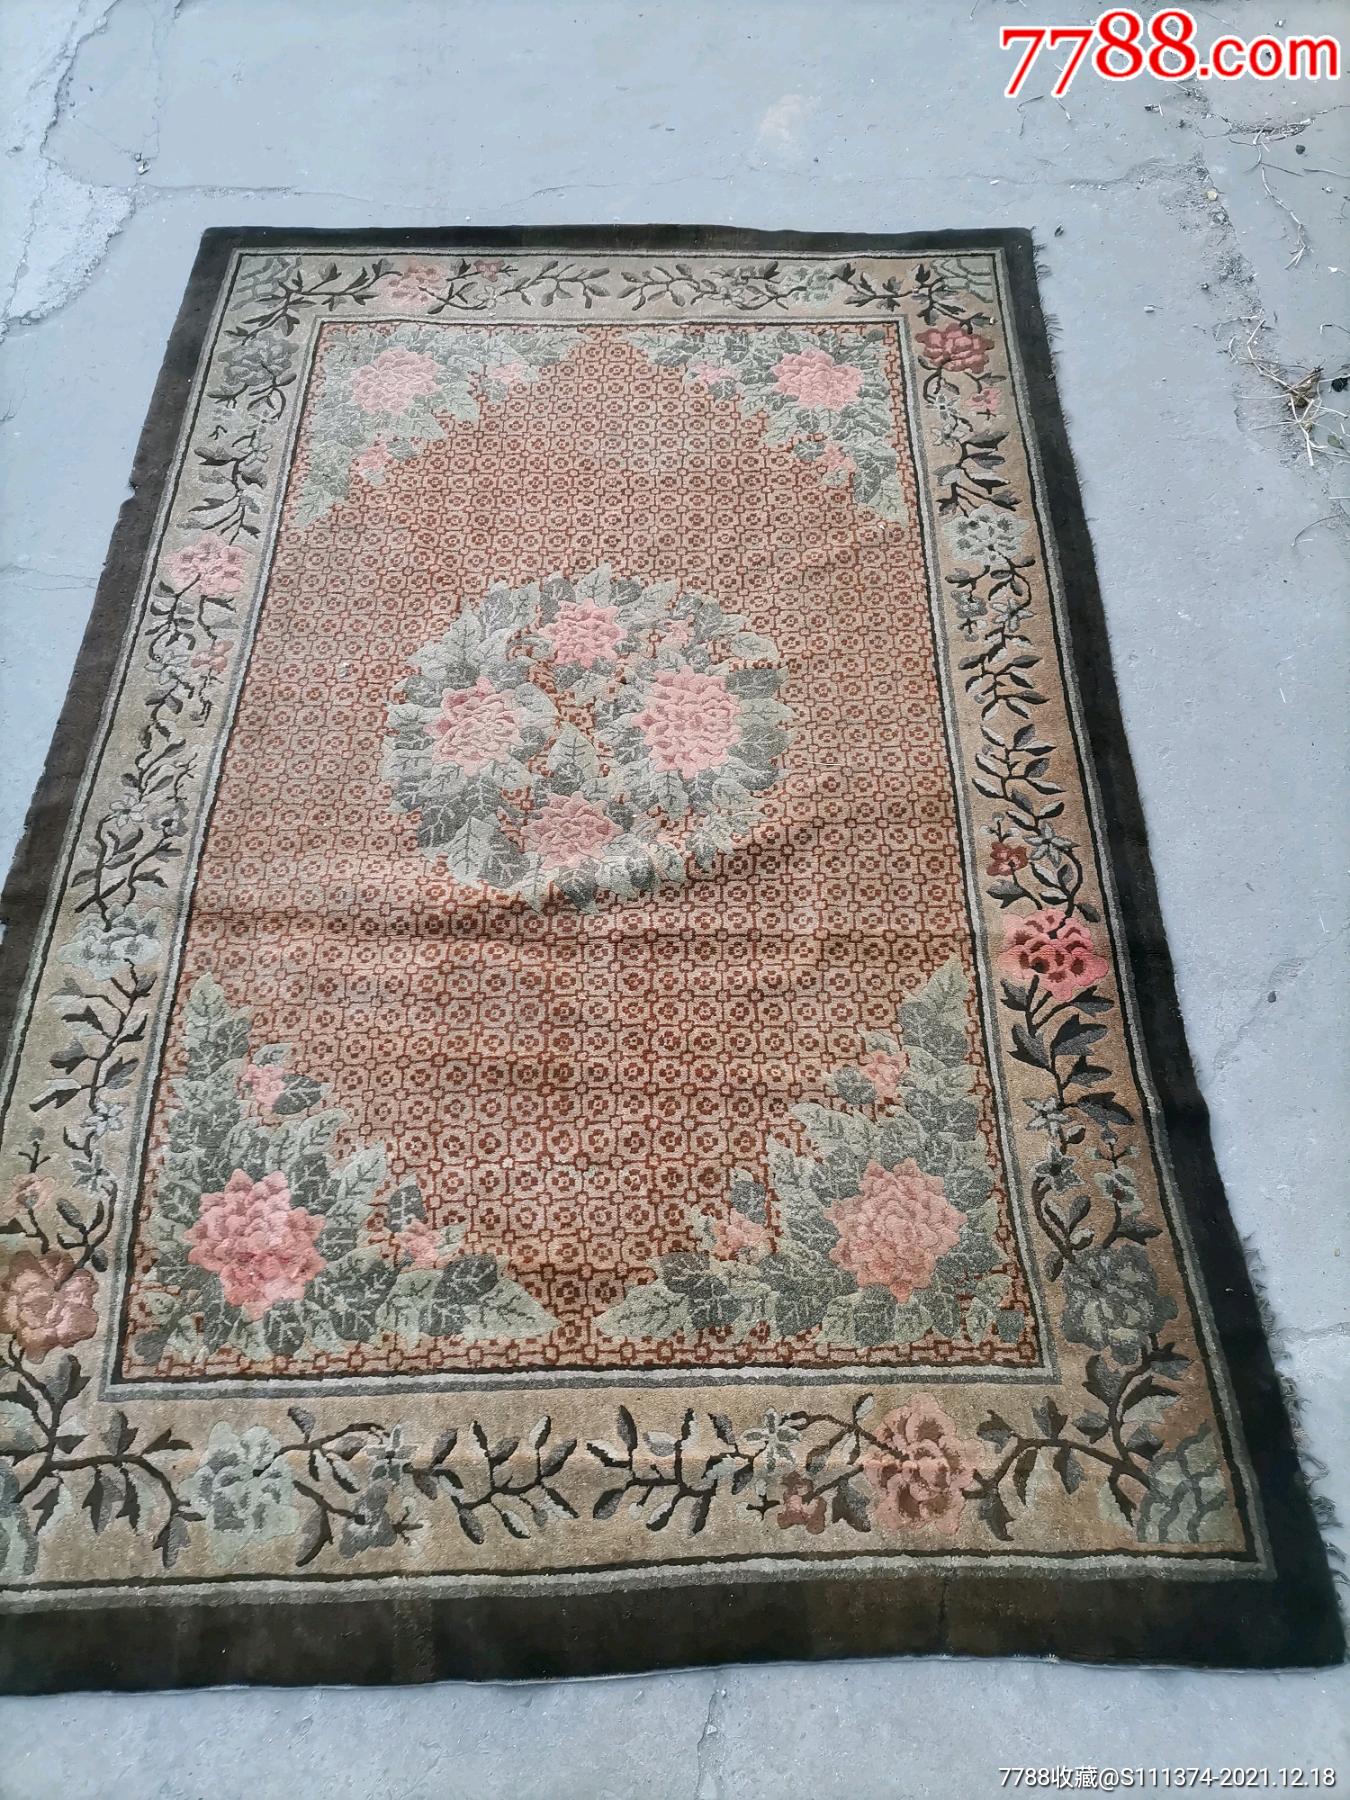 旧毛毯改造成地毯图片